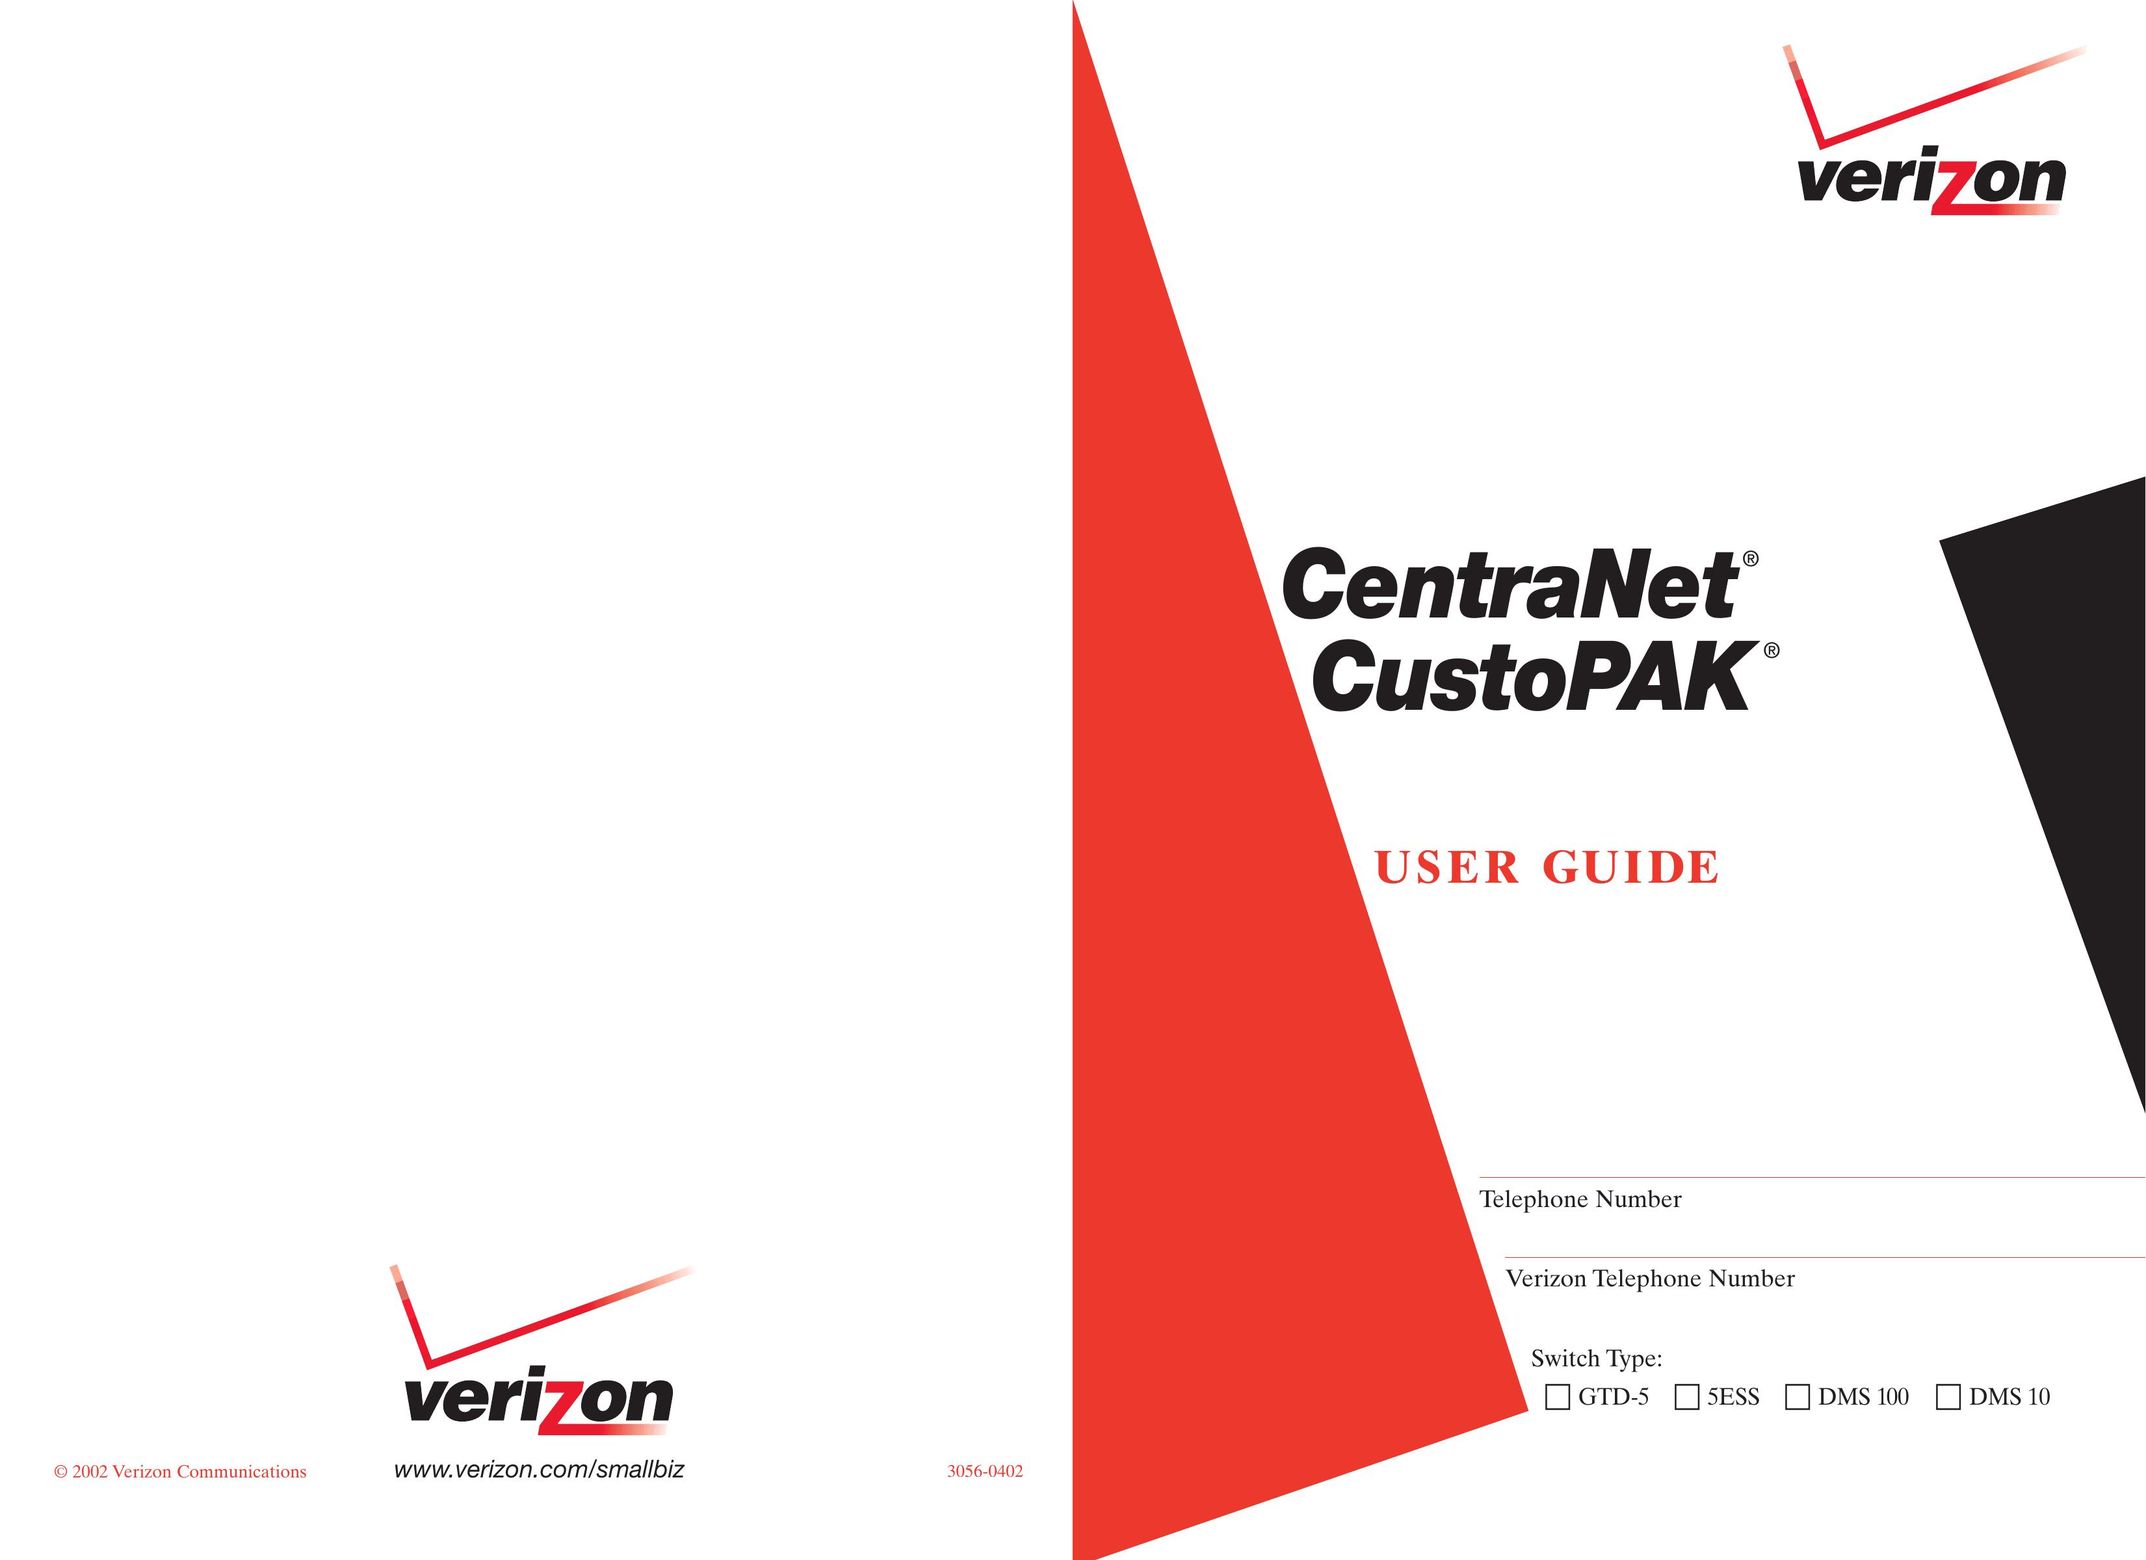 Verizon CustoPAK Telephone User Manual